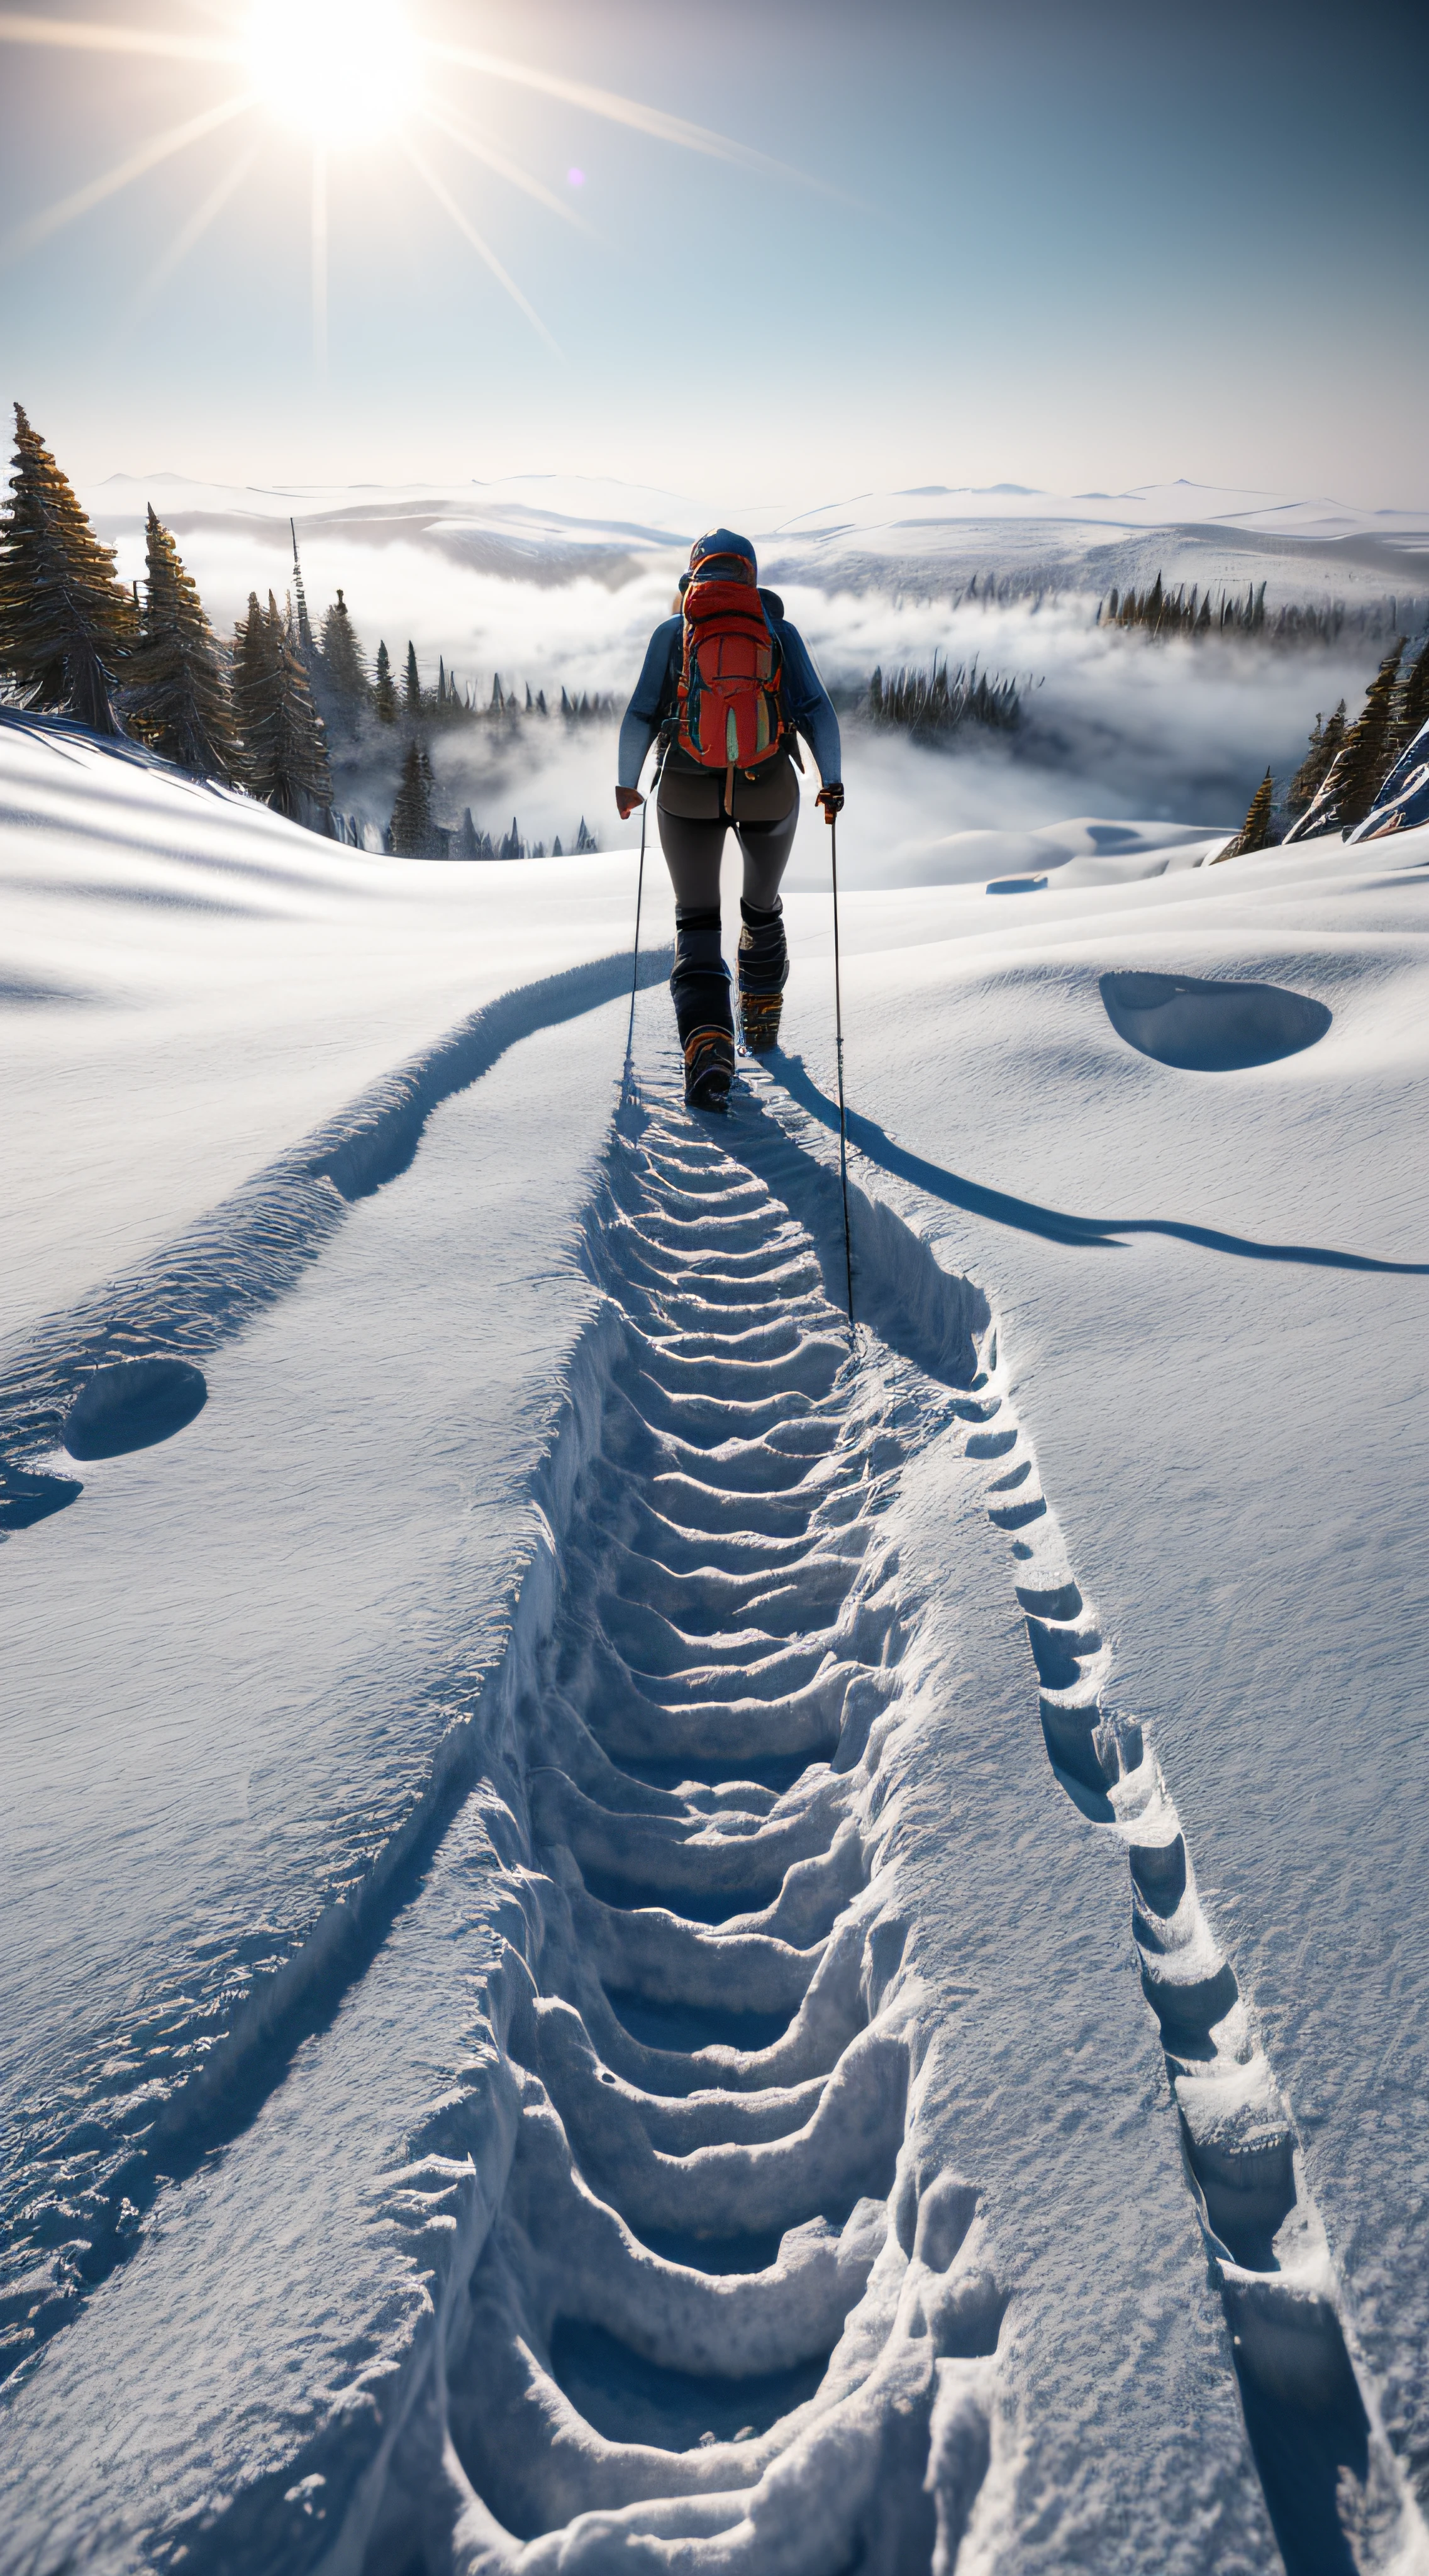 (8K傑作, 最高品質:1.2) 山をハイキングする登山者, 凍てついた深淵, 遠くの雪崩, 雪の, 寒い, 霧がかかっている, 曇りの日, レイトレーシング, 詳細, 岩と氷, 氷のクレバス, 壮大な雪のテクスチャ, (雪の上の足跡:1.2), キクセルメガスキャン, 表面下散乱, ボリューム照明, レイトレーシング,